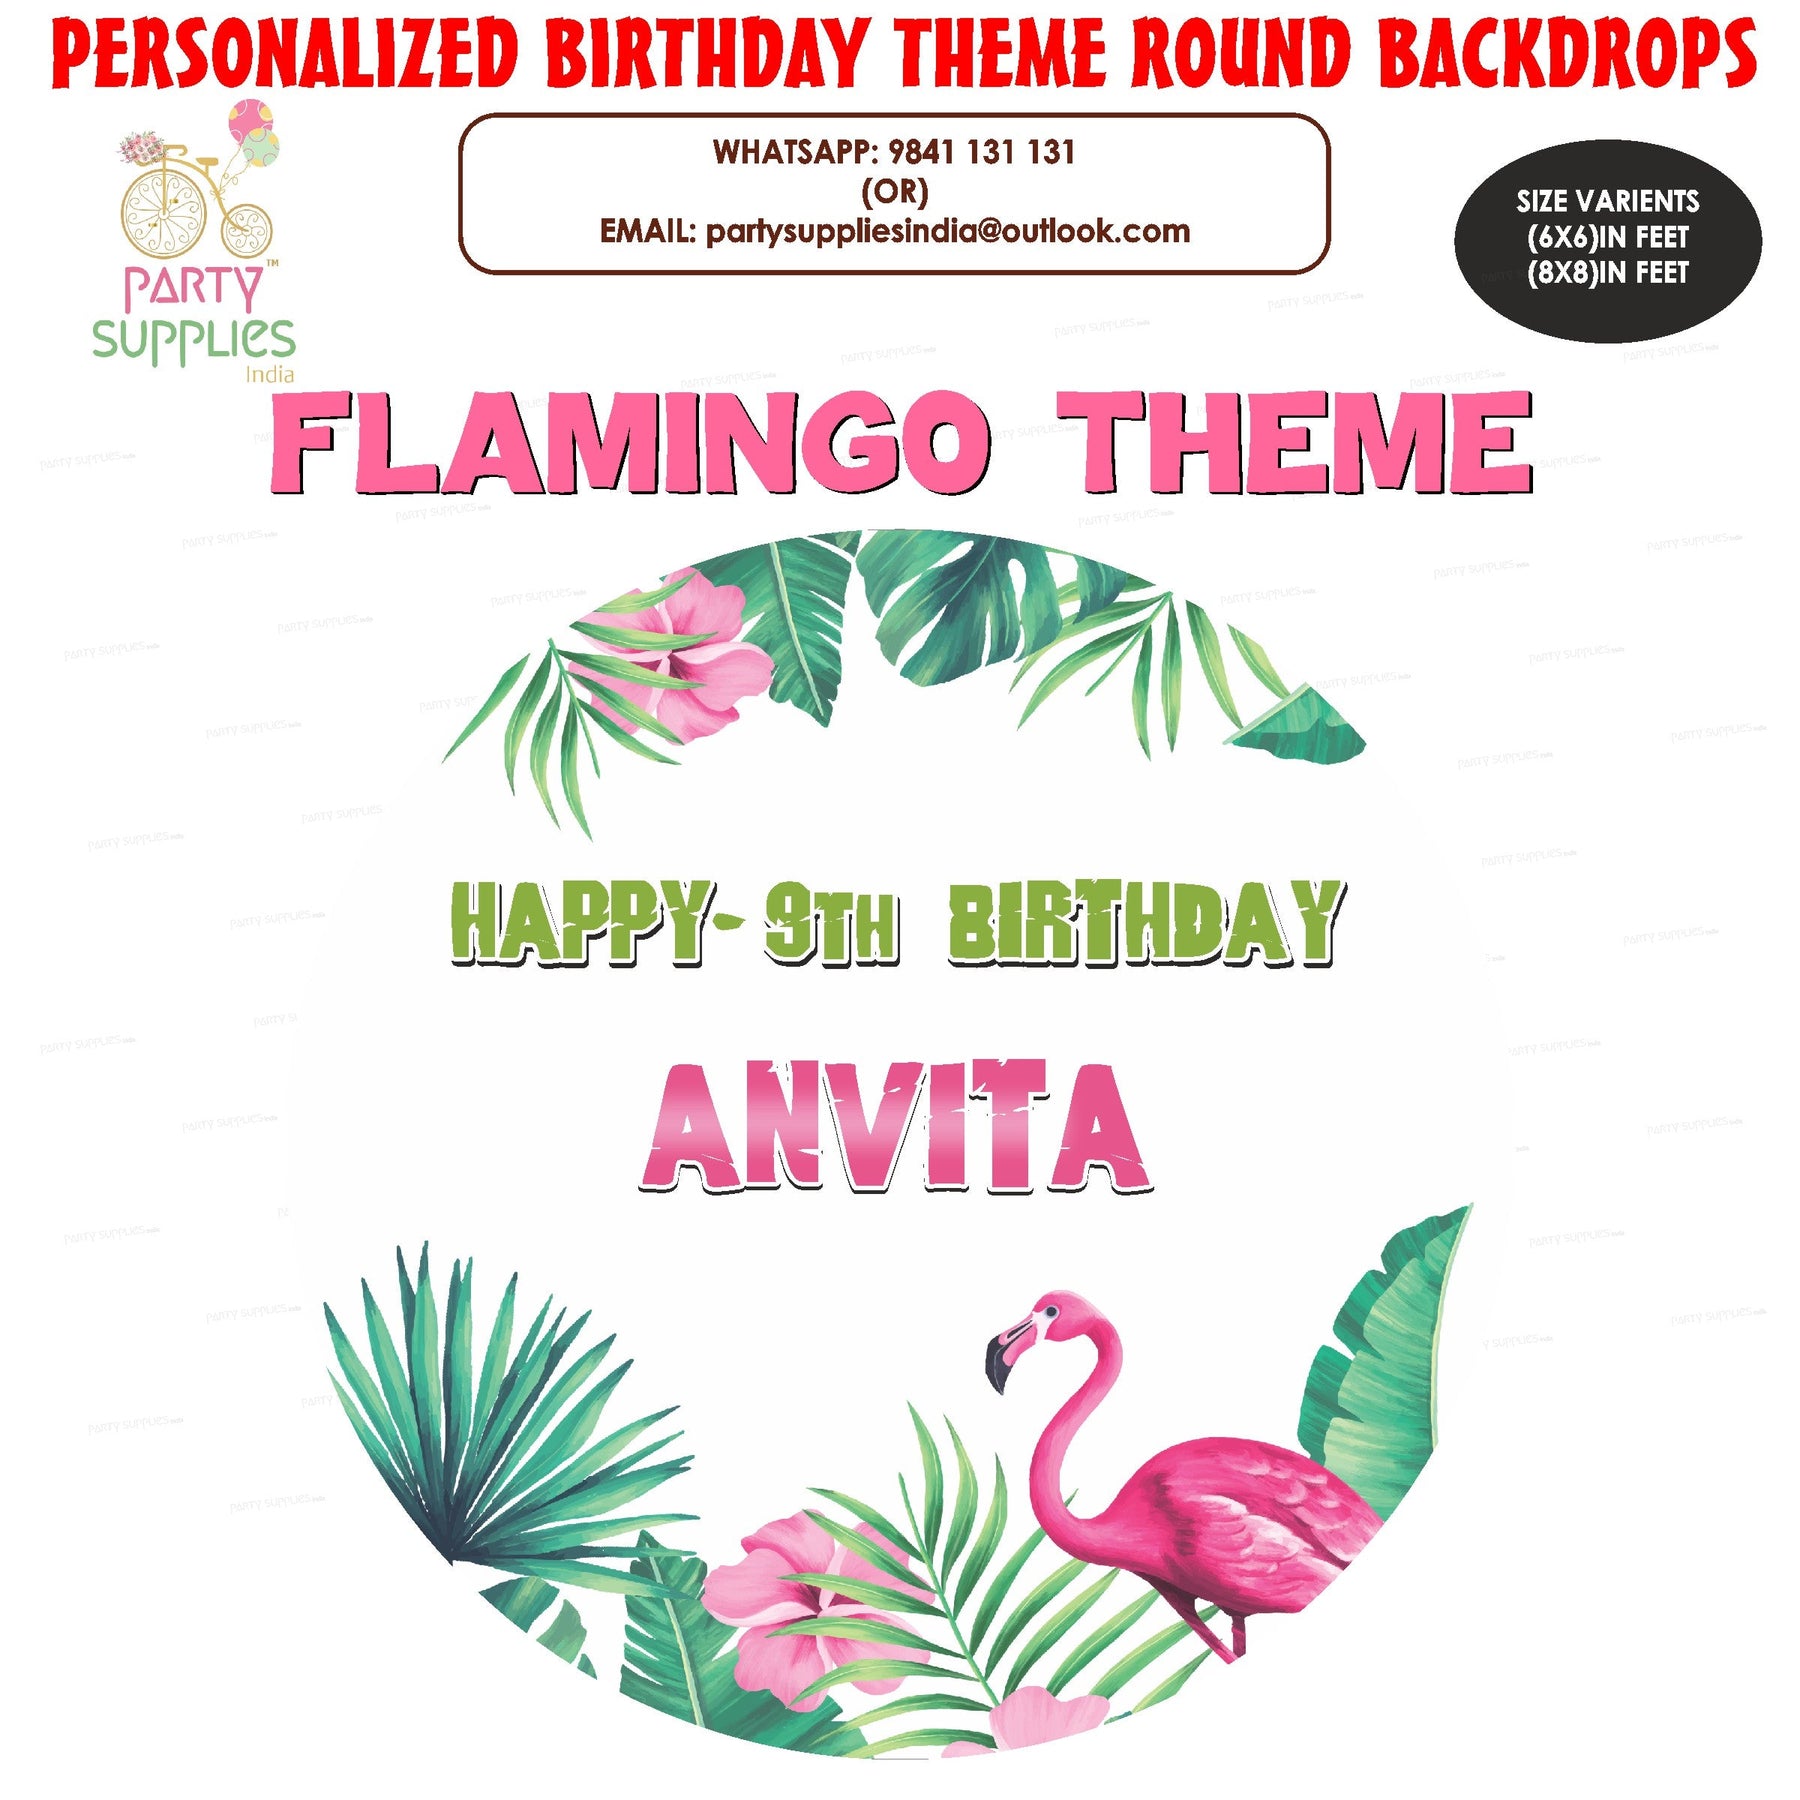 PSI Flamingo Theme Round Backdrop